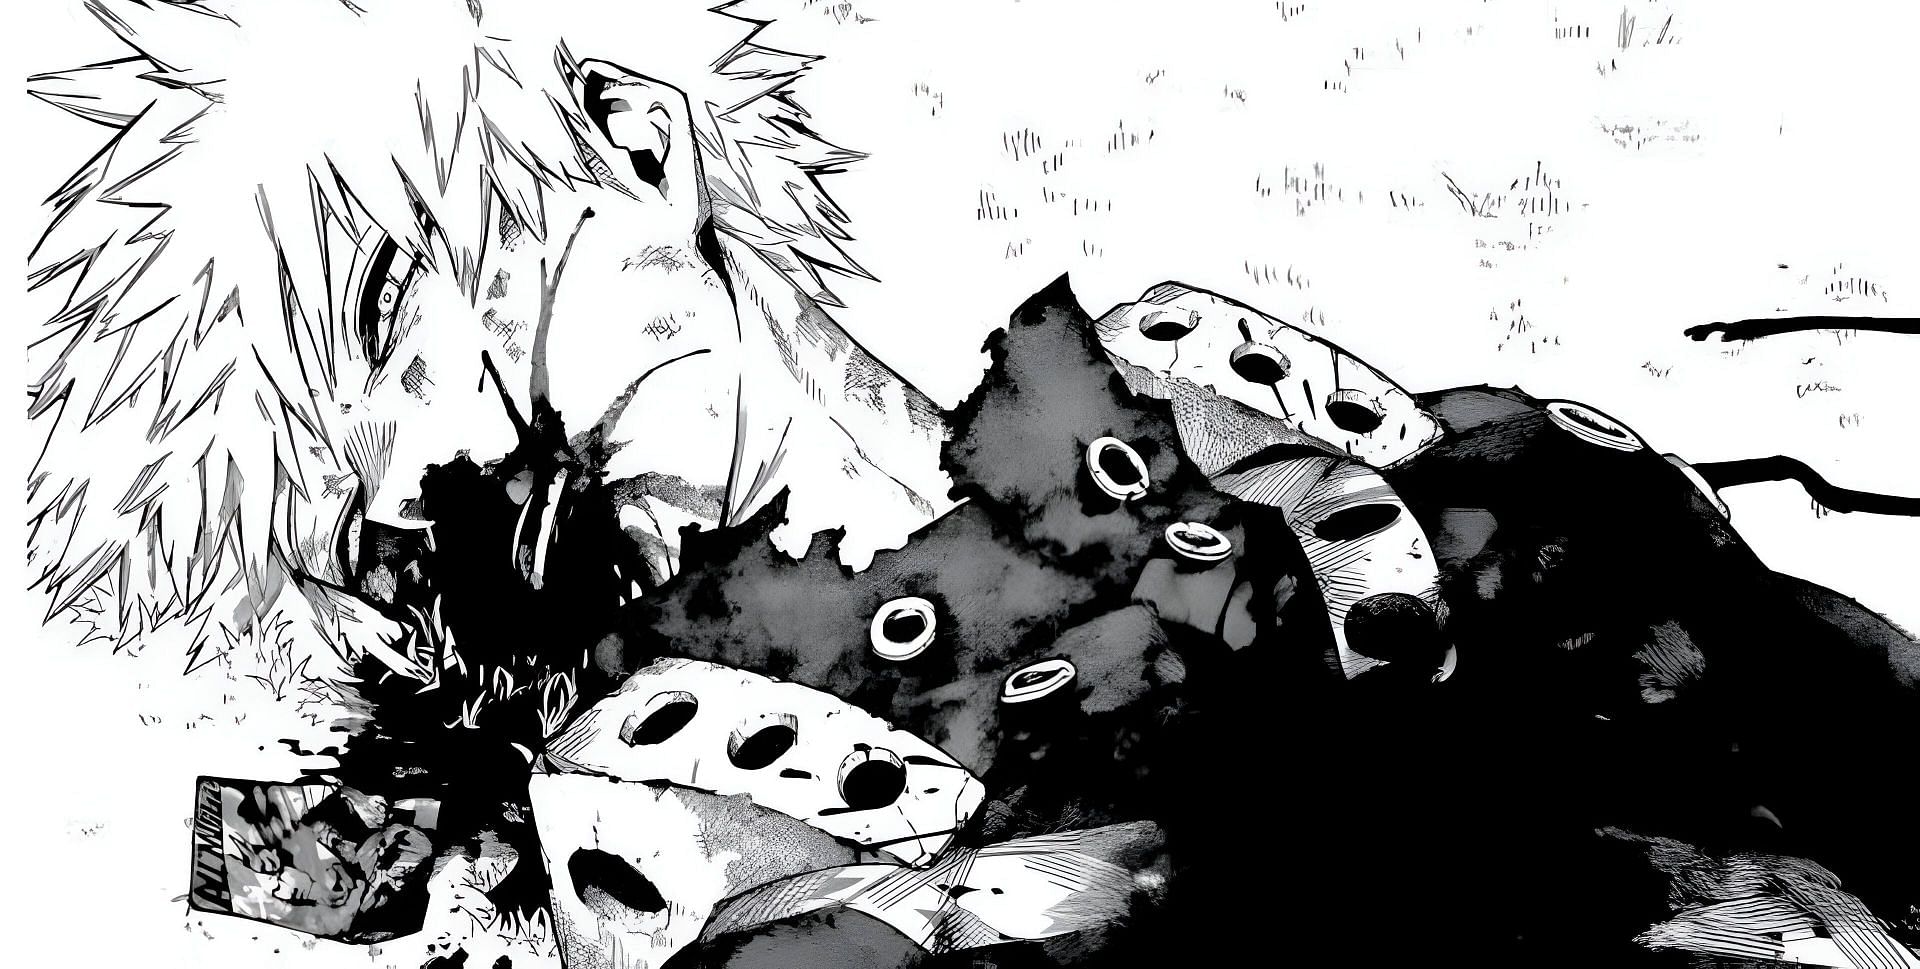 Bakugo as seen in the manga (Image via Shueisha)